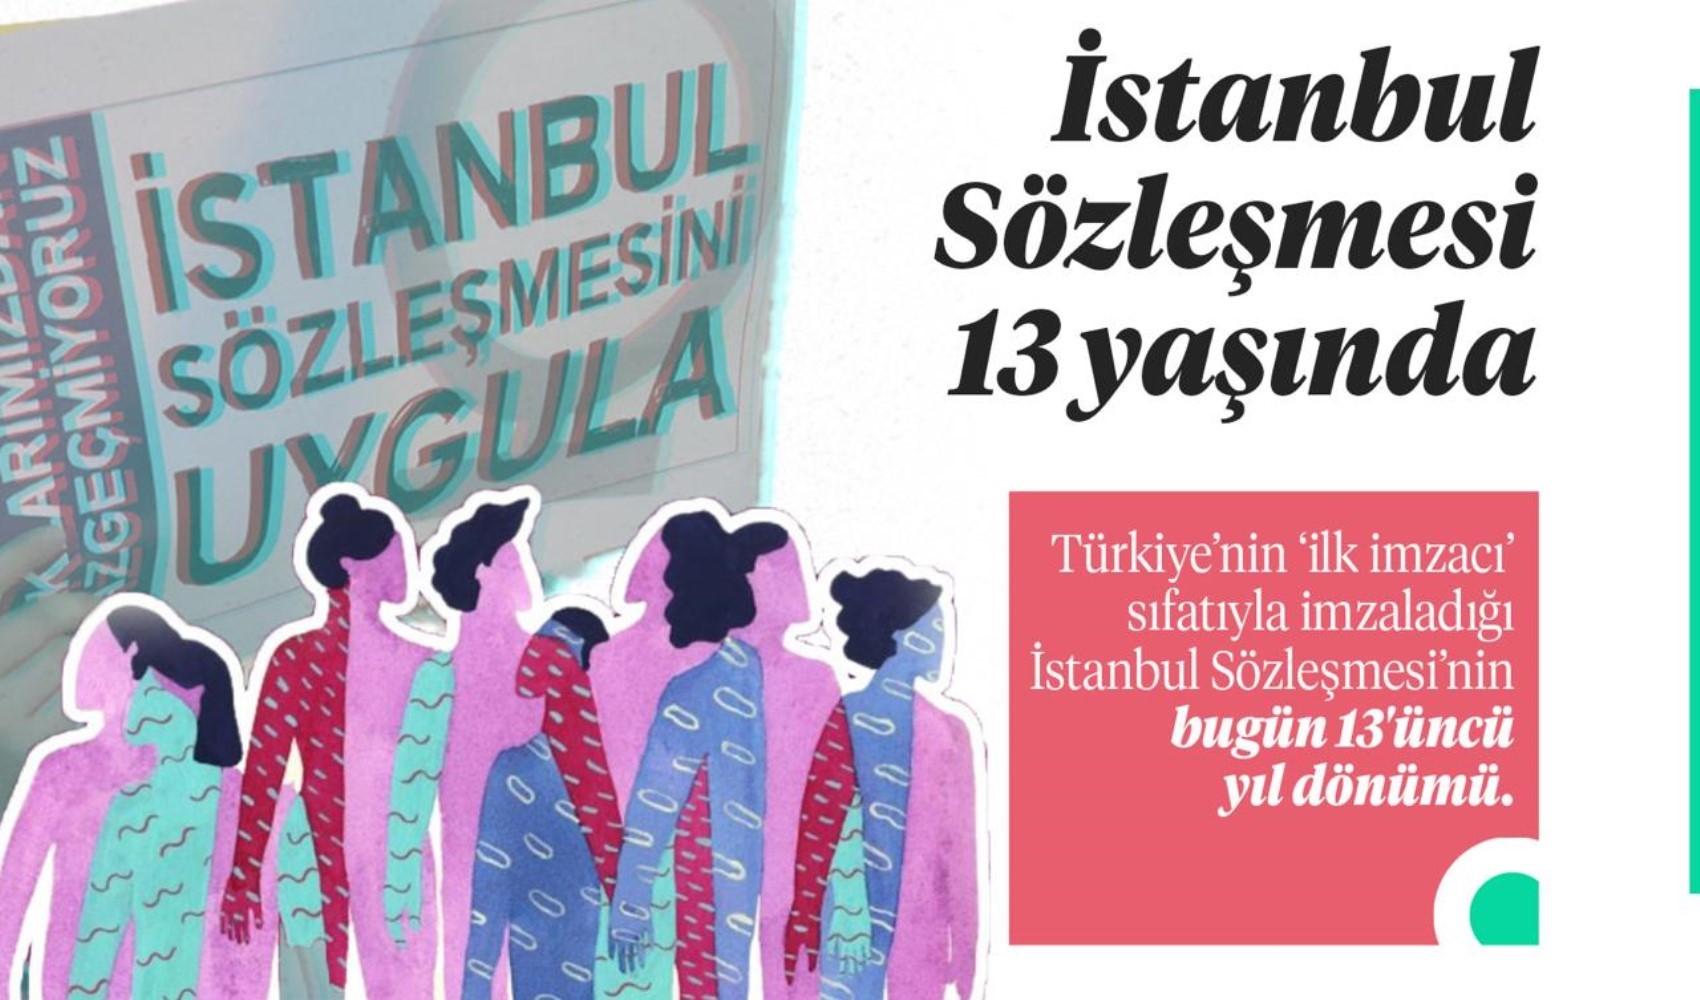 İstanbul Sözleşmesi 13 yaşında: 'Şiddet failleri kazandı kadınlar kaybetti'